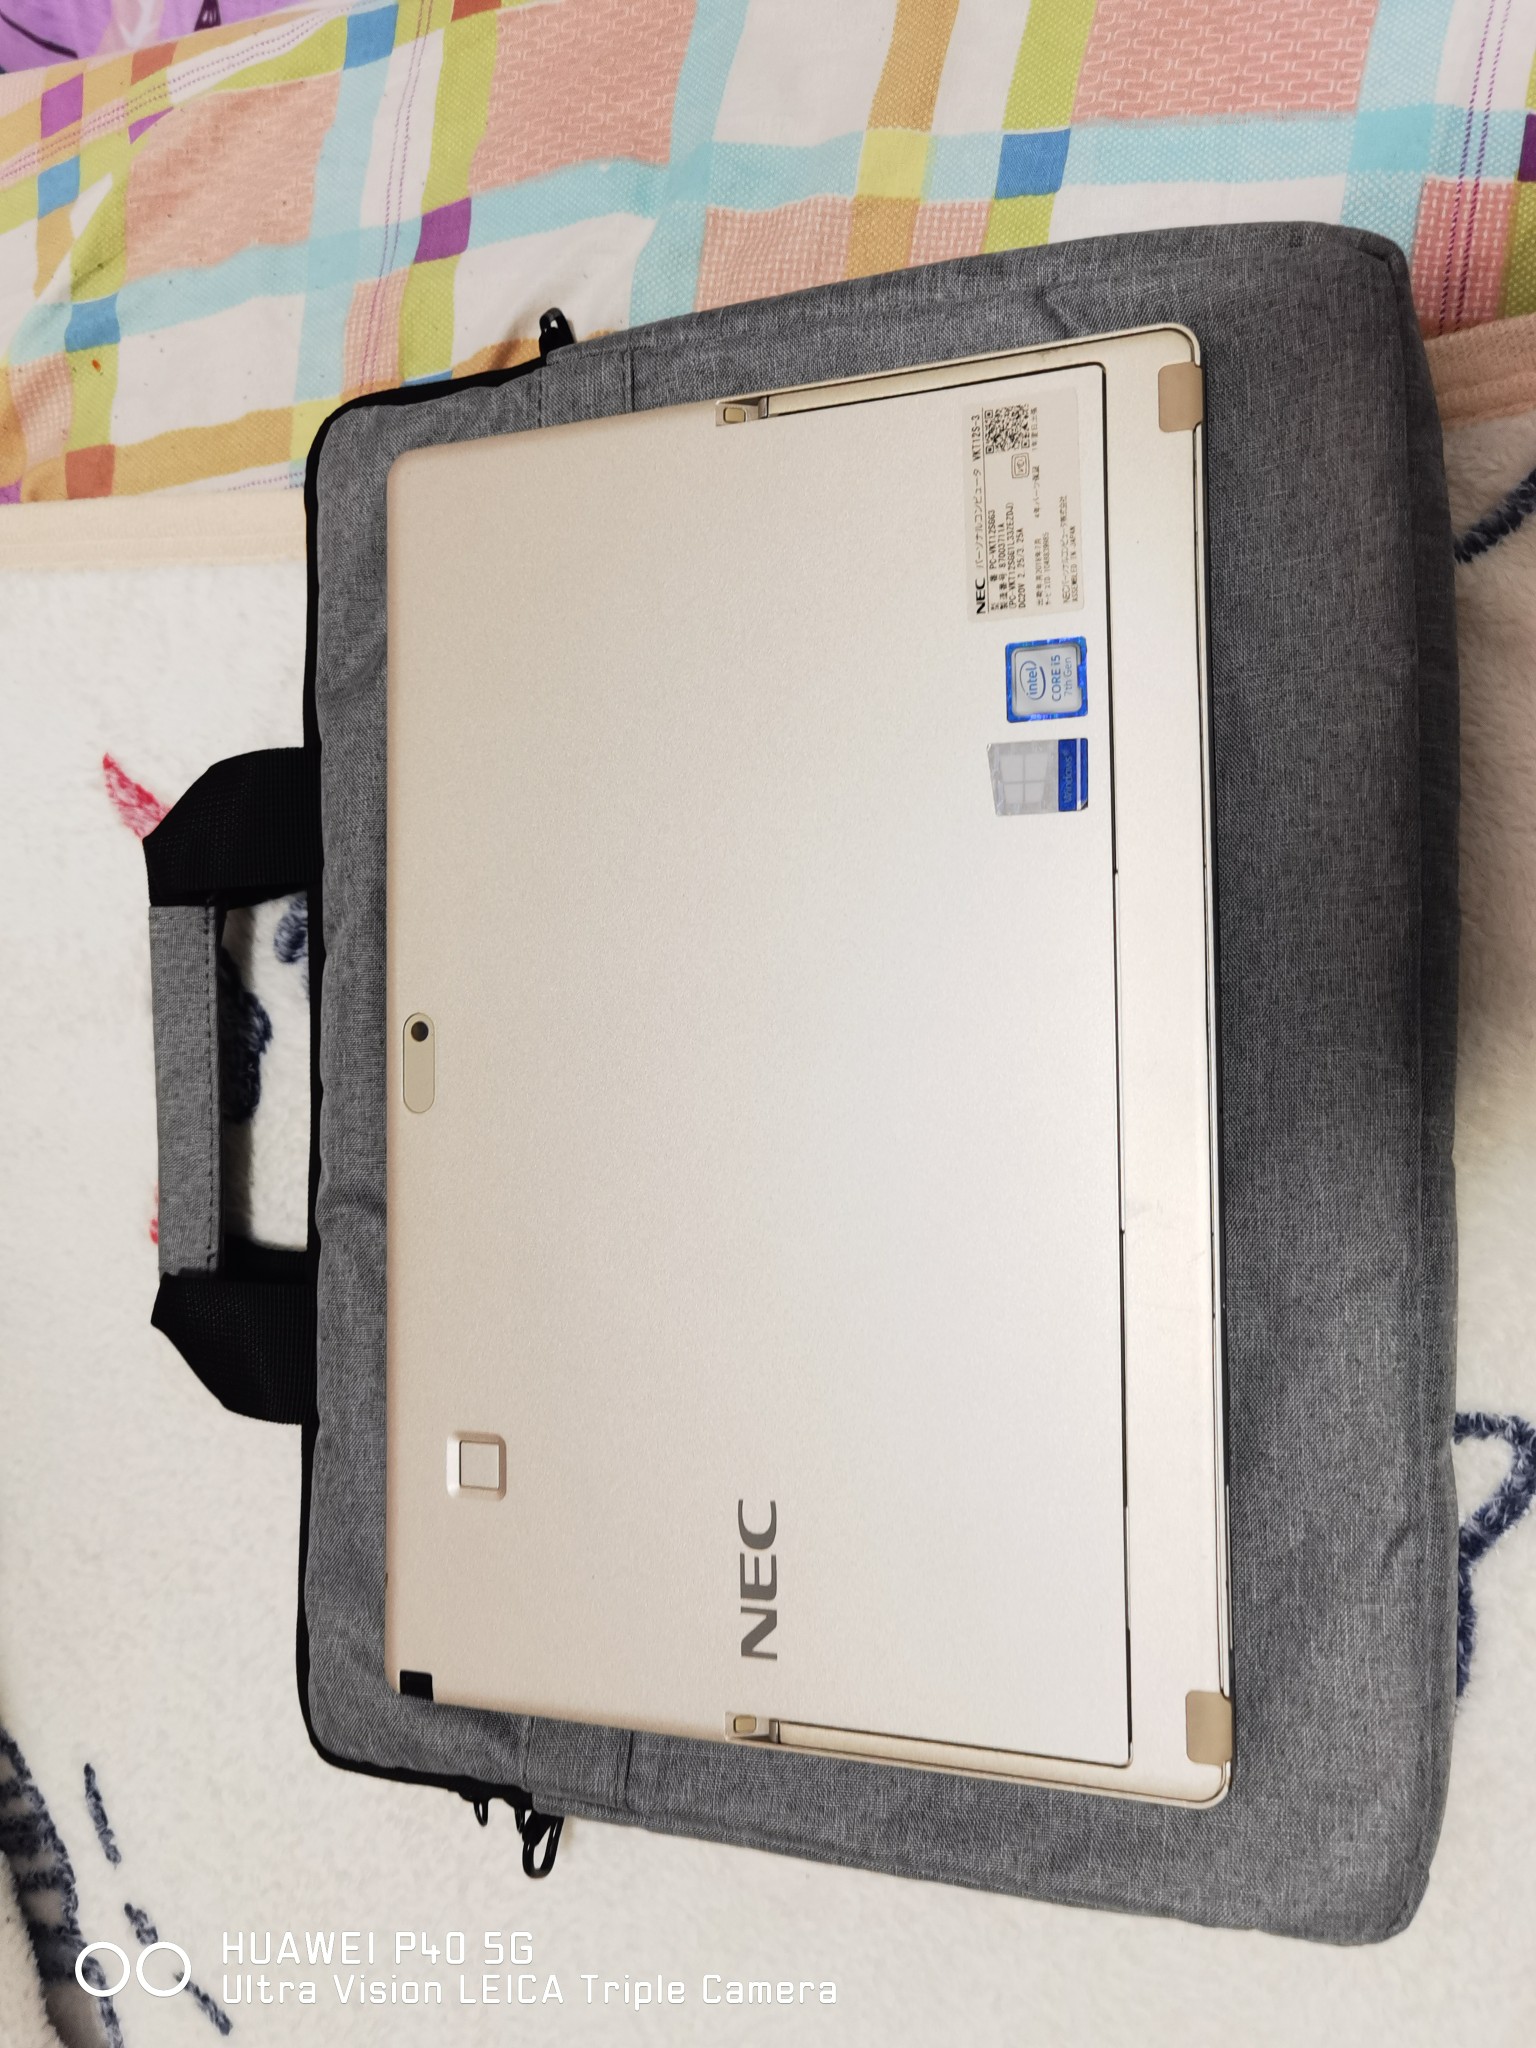 全球极轻本NEC 795克超薄便携笔记本电脑手提商务轻薄游戏超级本